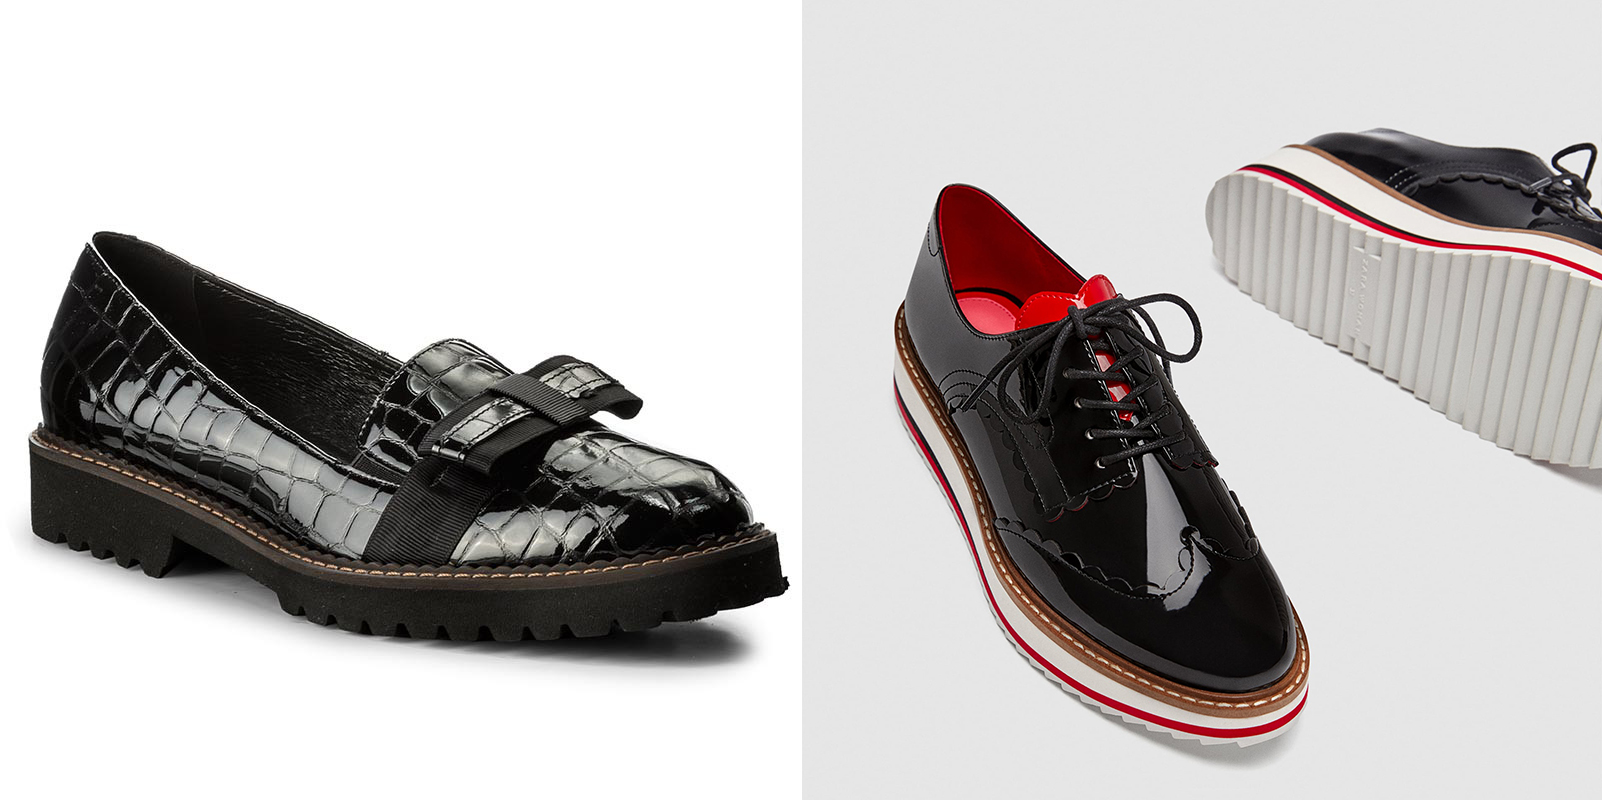 A lakkcipő és az Oxford fazon nagyon menő lesz tavasszal: a Solo Femme cipőjét 23 990 forintért tudod megrendelni <a href=‘https://www.ecipo.hu/‘ target=‘_blank‘>innen</a>, a Zara magasított talpú maszkulin fazonját pedig 9995 forintért vásárolhatod meg.